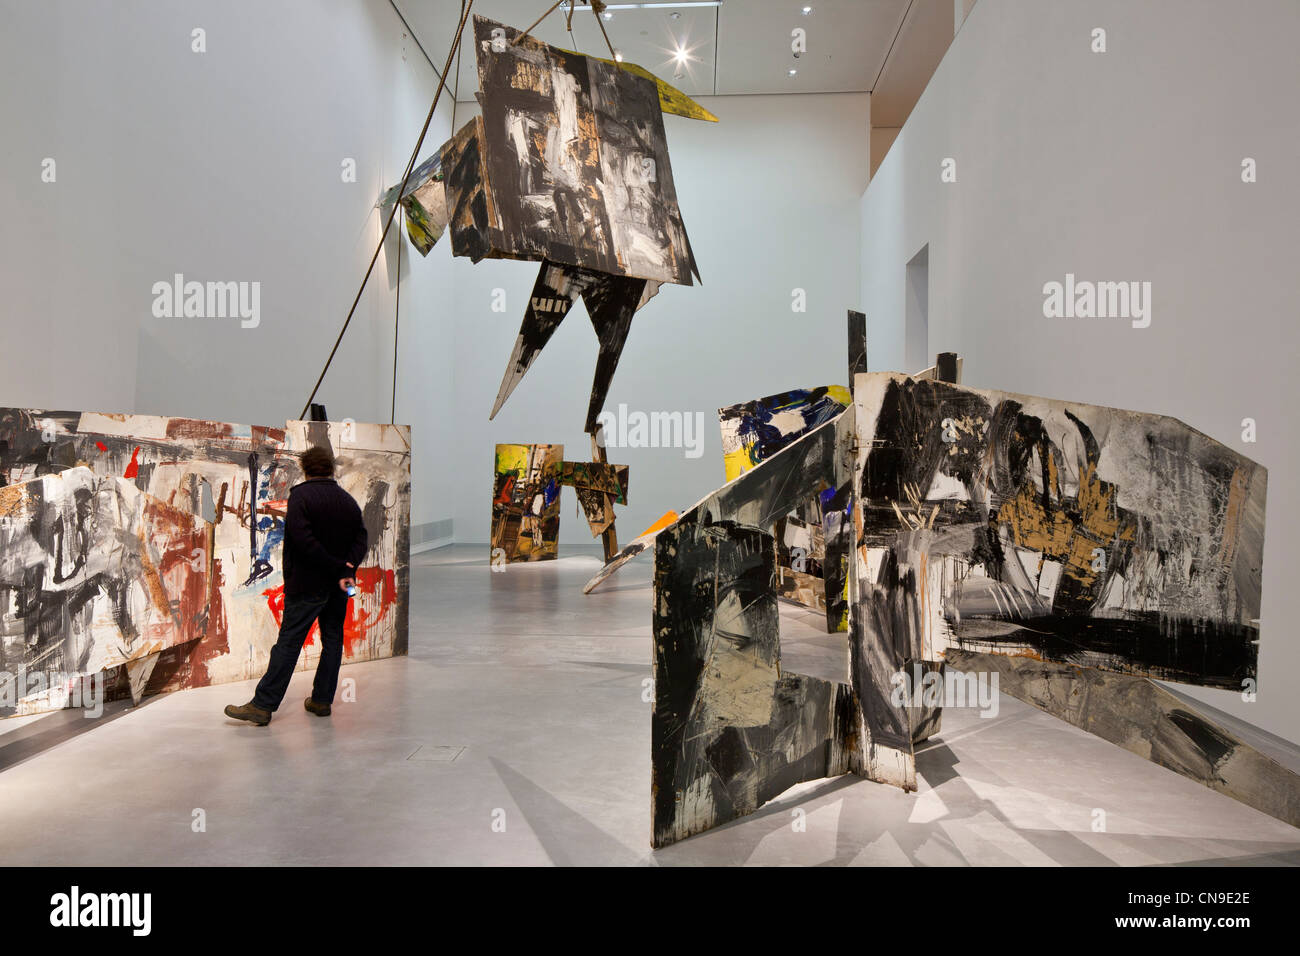 Deutschland, Berlin, Kreuzberg, Berlinische Galerie, ein Museum für moderne Kunst, gegründet 1975, befindet sich in einer ehemaligen Glasfabrik Stockfoto